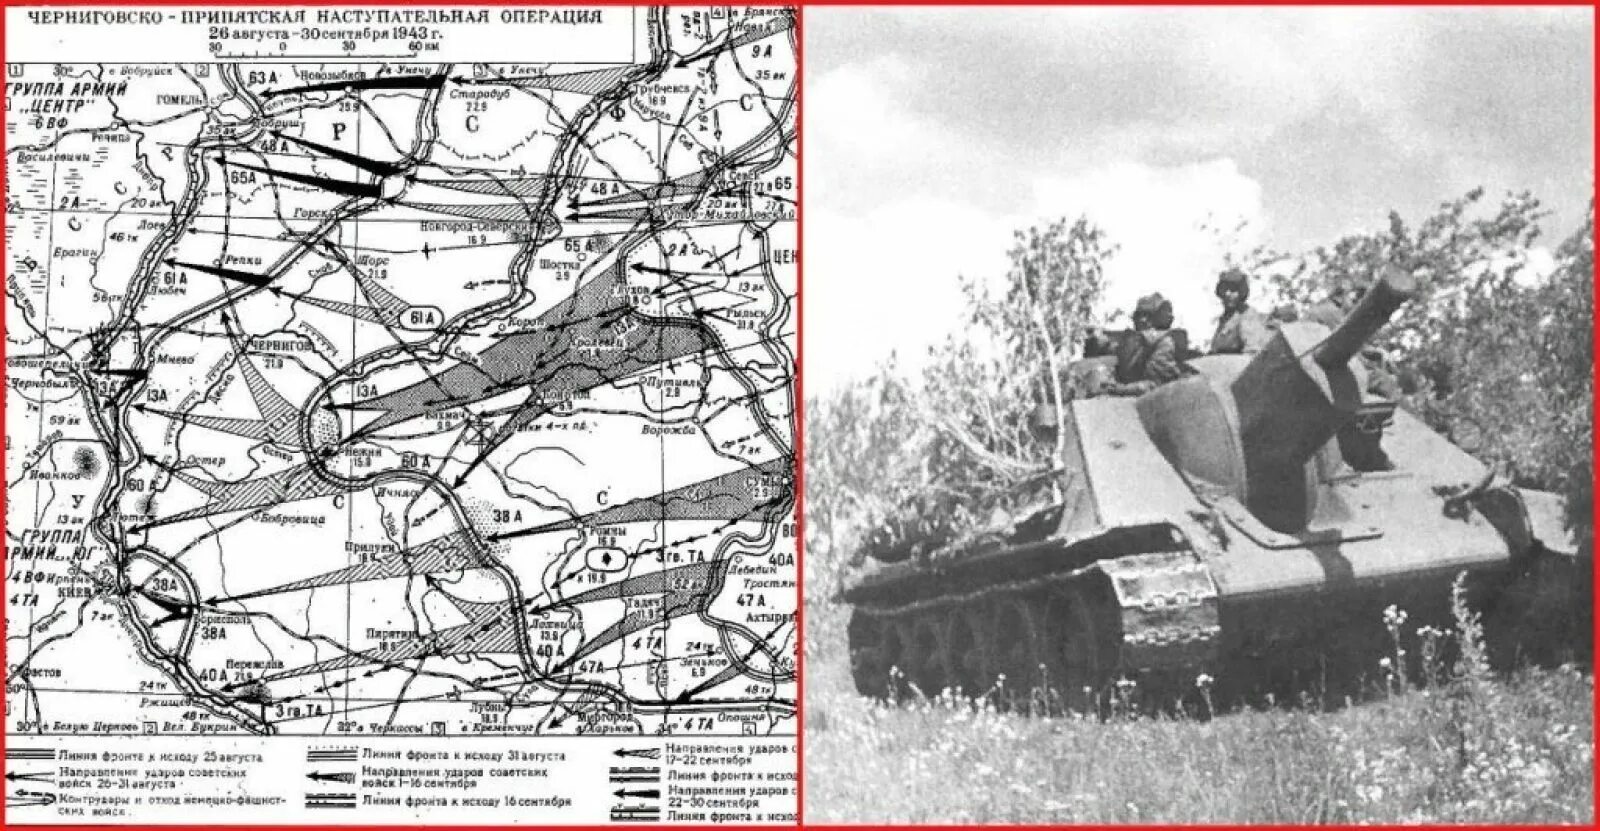 3 августа 1943 г. Черниговско-Полтавская операция 1943 года. Черниговско-Припятская операция 26 августа 30 сентября 1943. Черниговско Припятская наступательная операция 1943 карта. Освобождение Чернигова 1943.